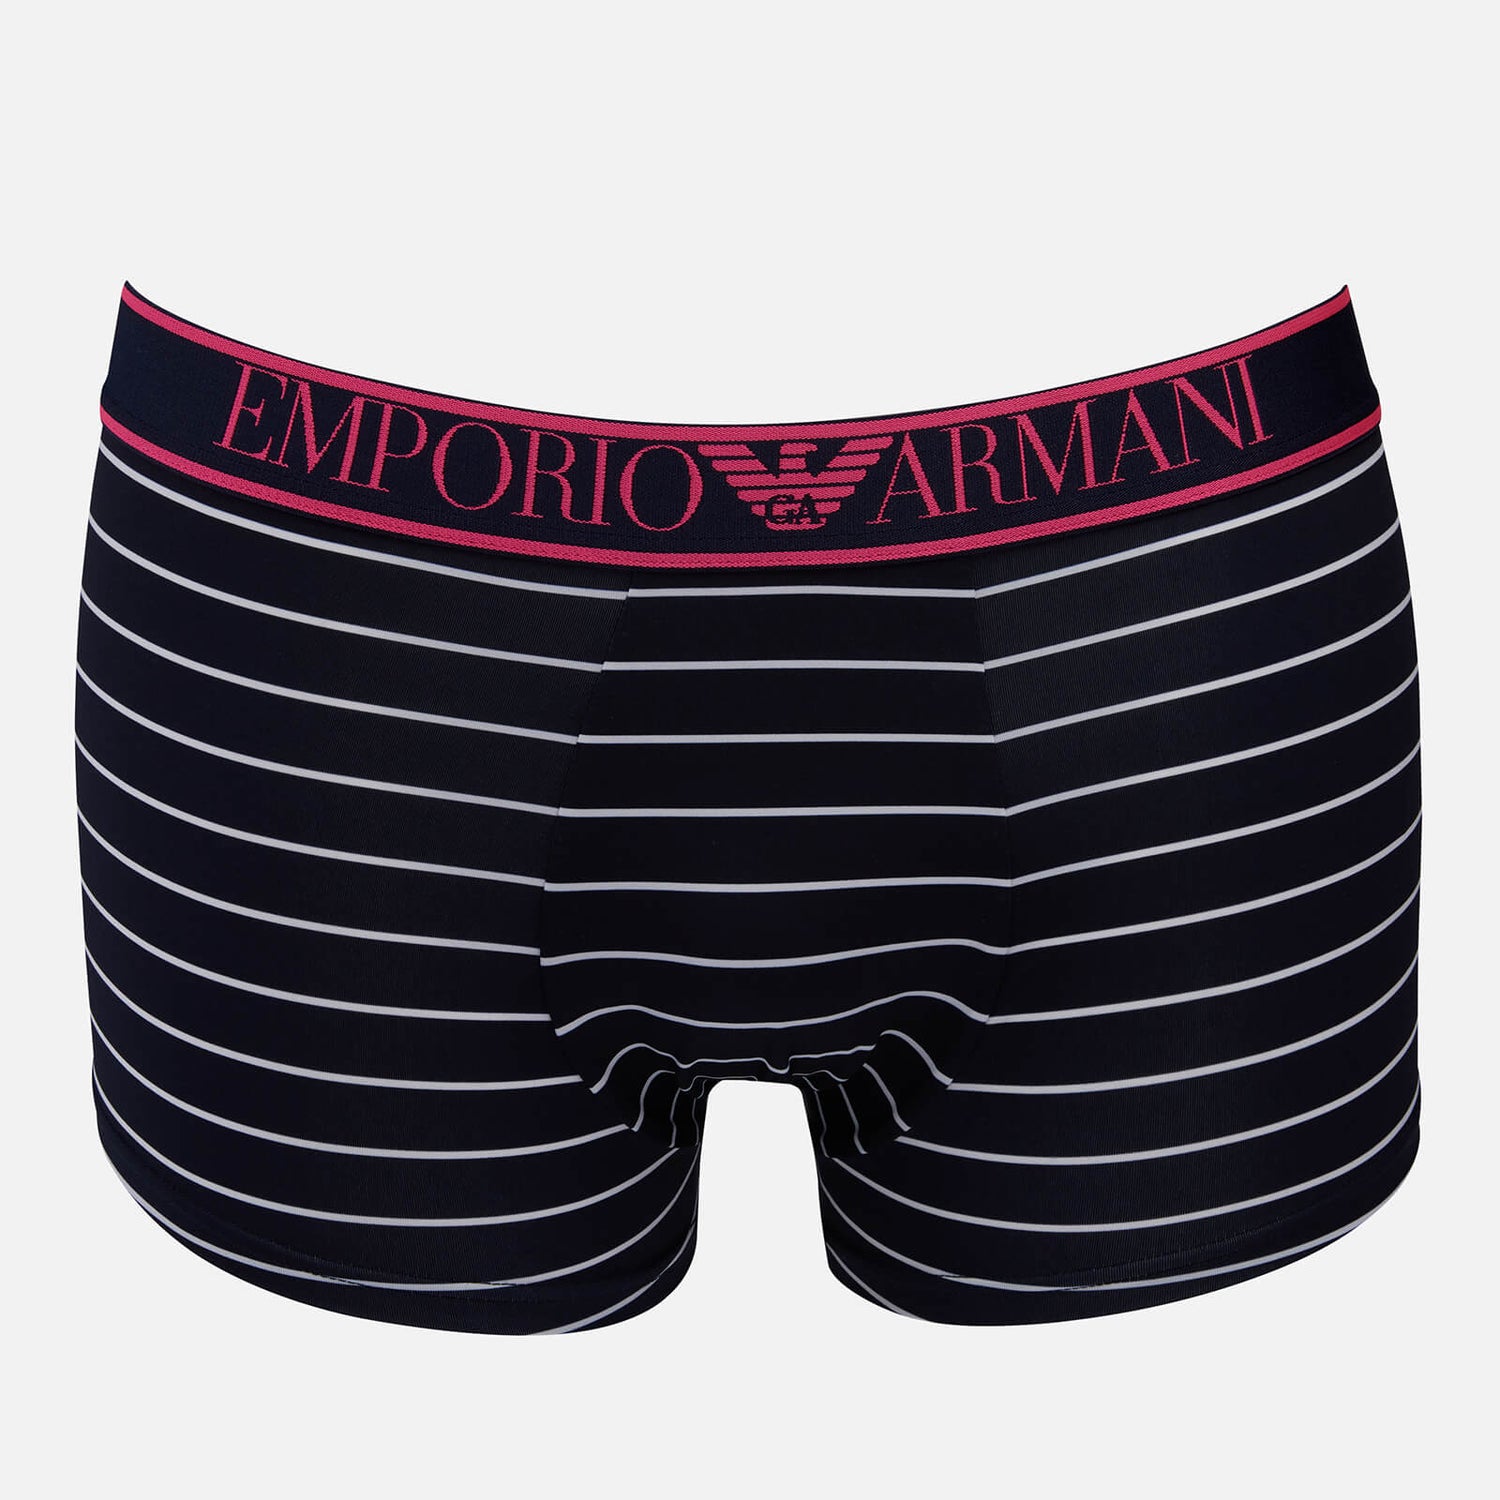 Emporio Armani Men's All Over Printed Microfiber Trunks - Marine Stripe/White